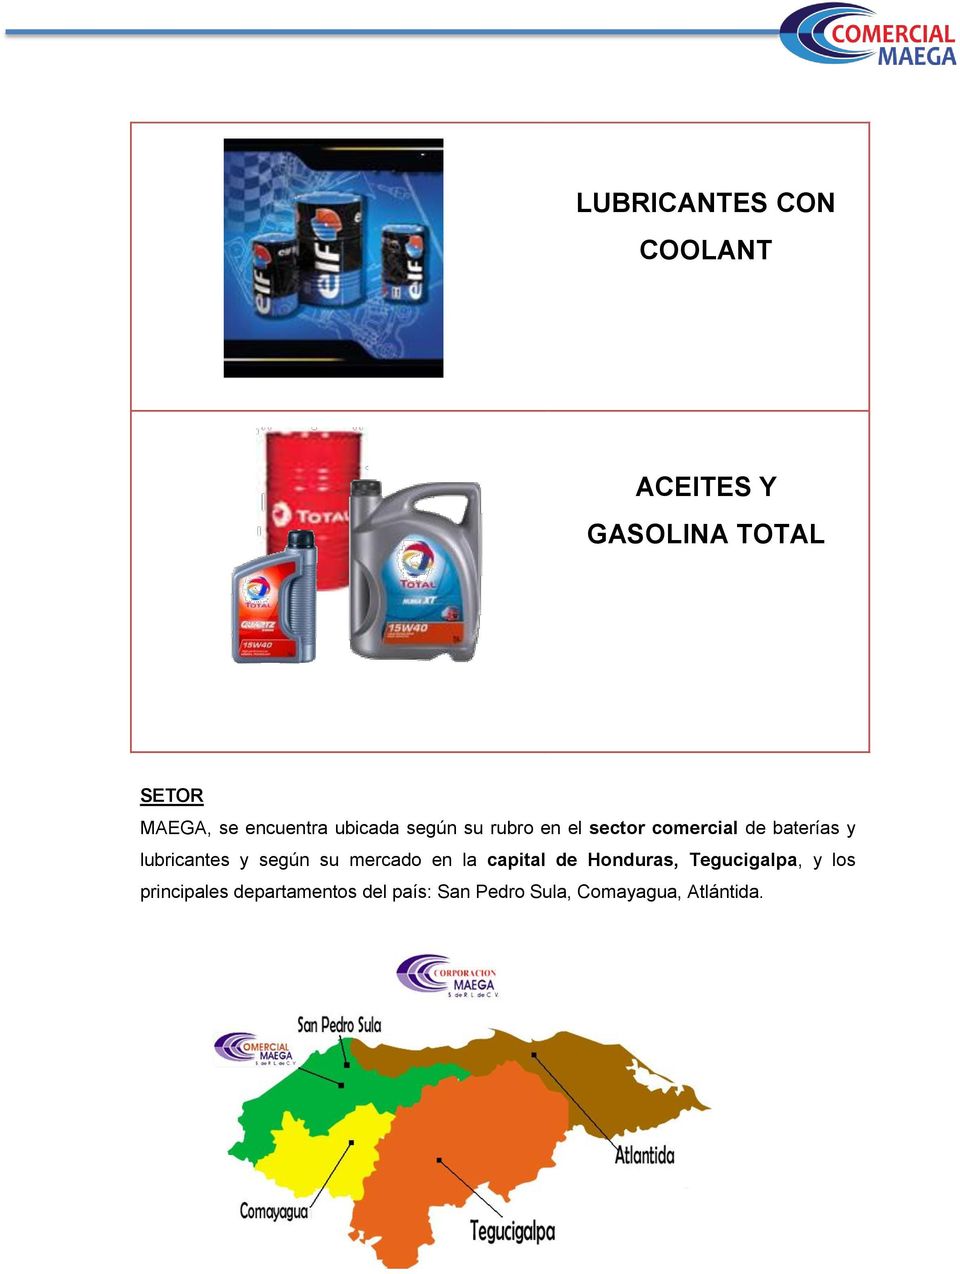 lubricantes y según su mercado en la capital de Honduras, Tegucigalpa,